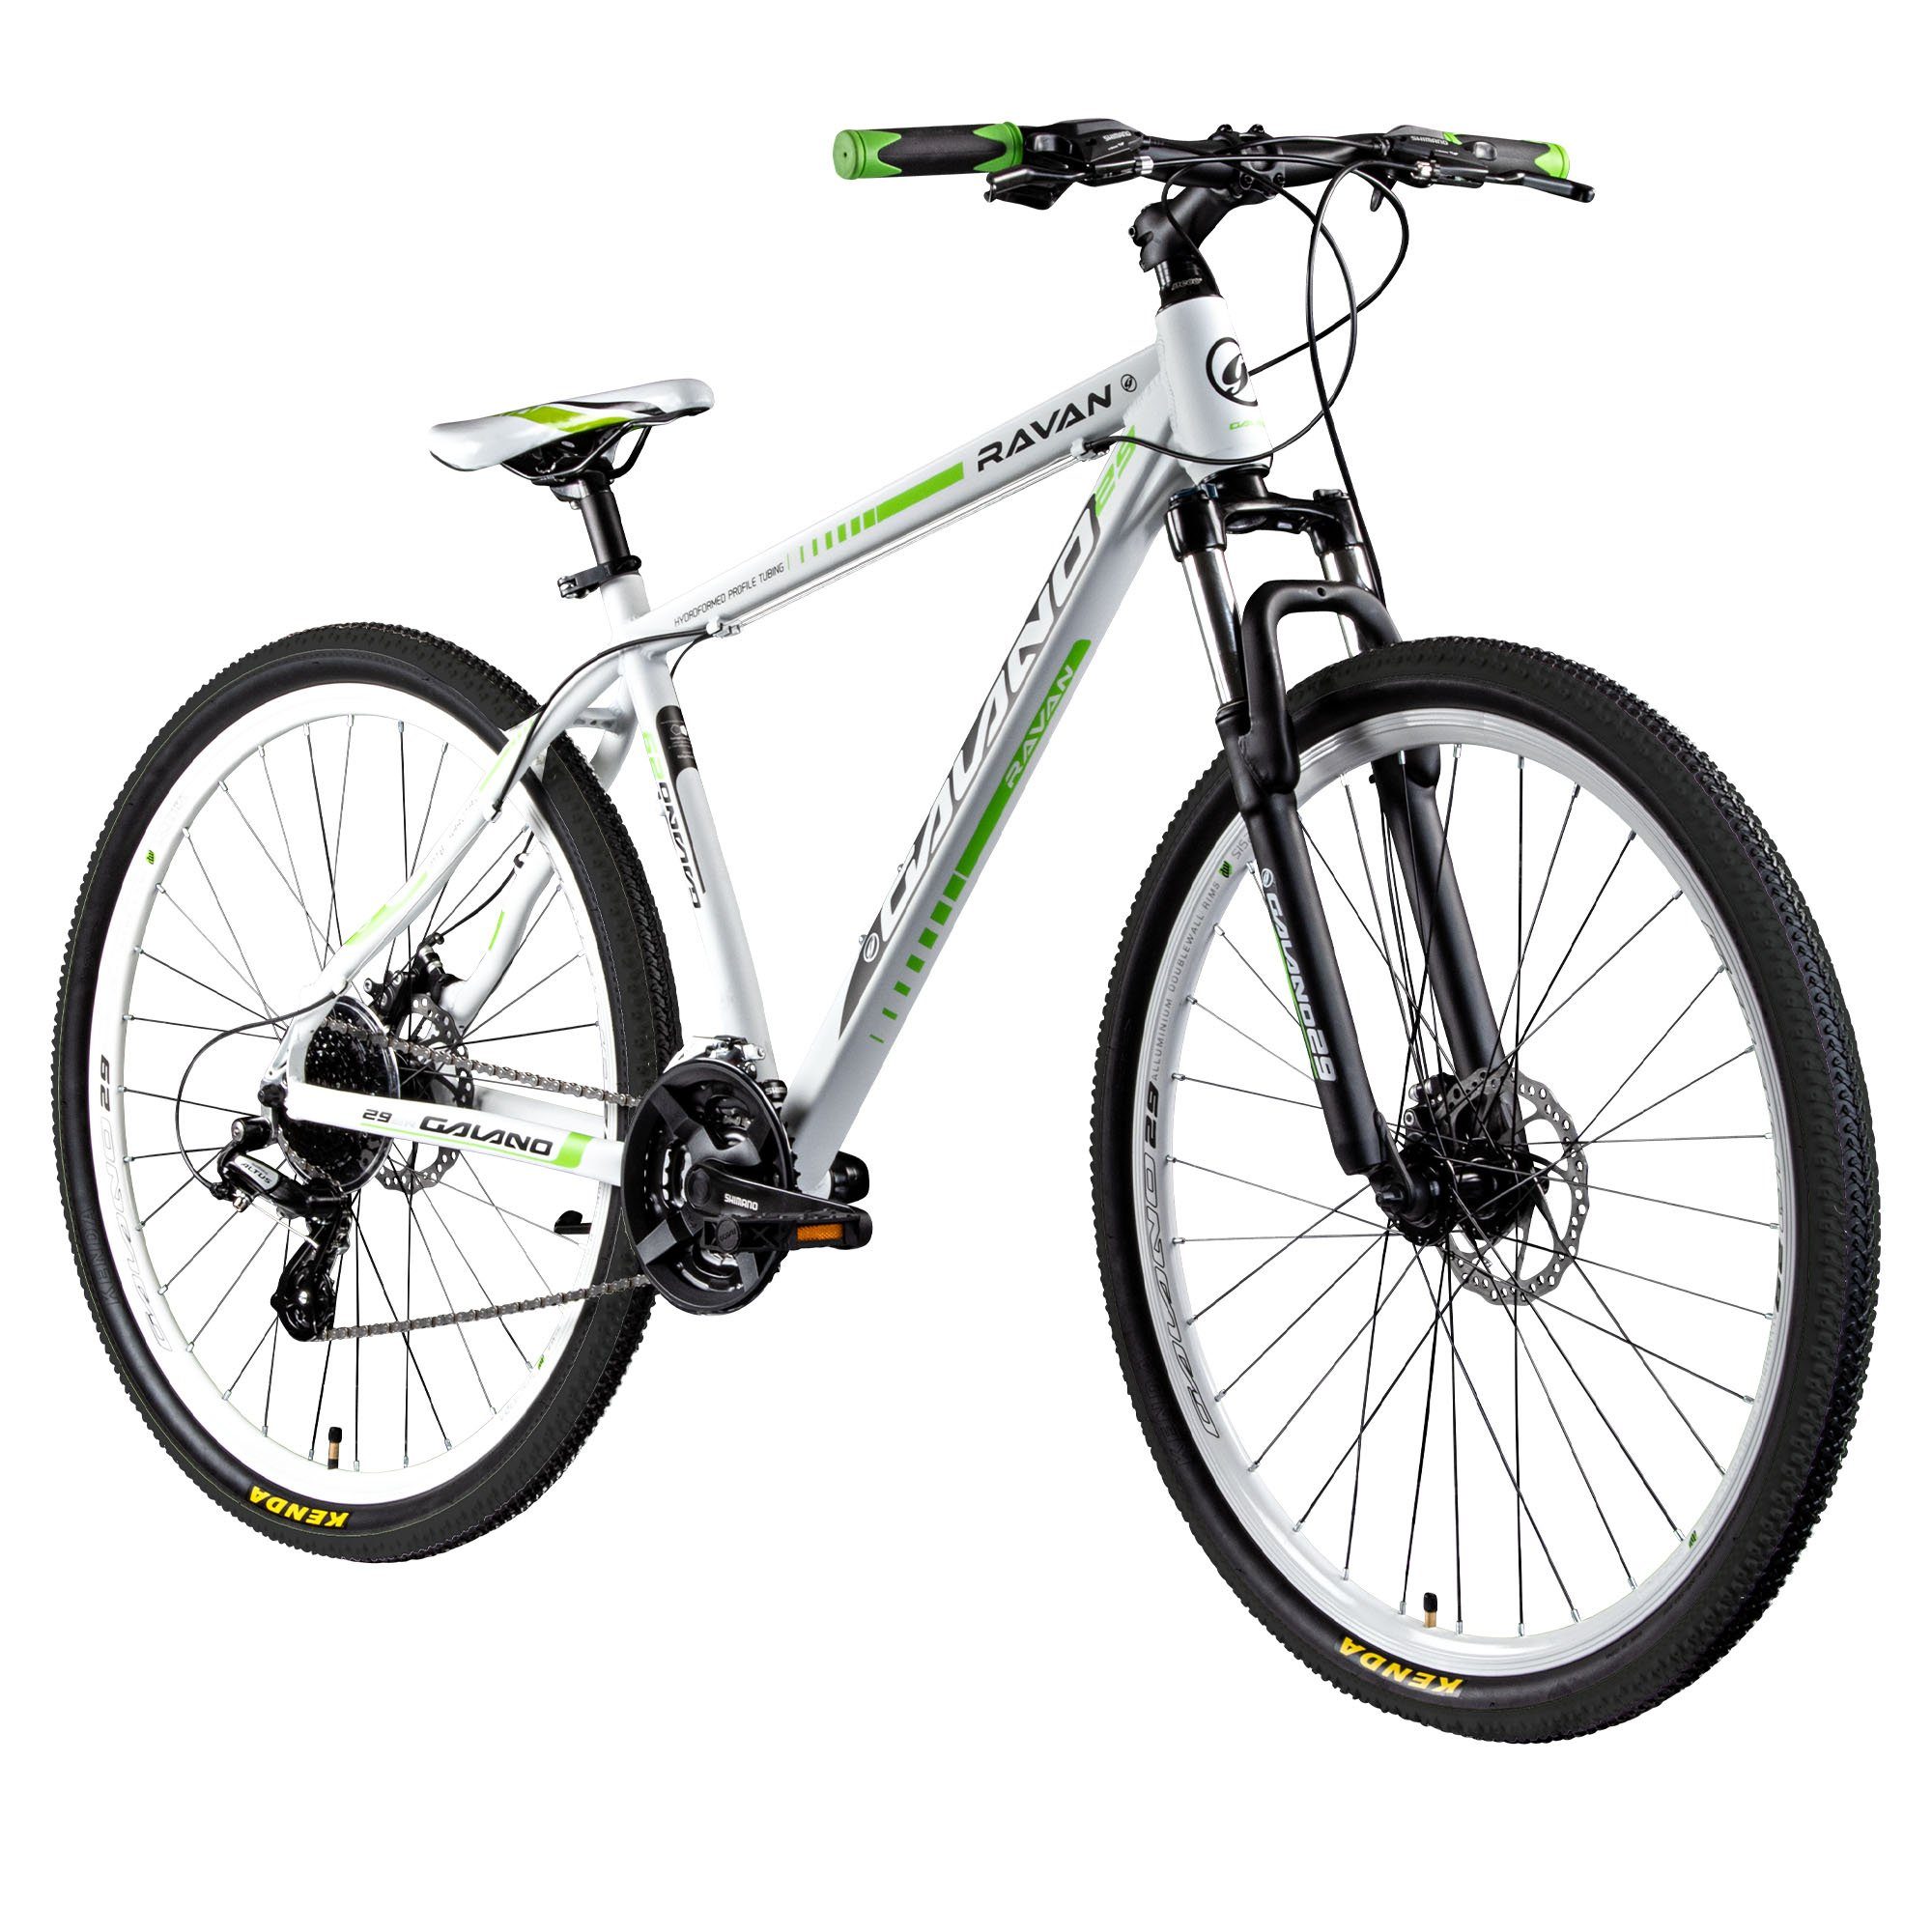 Galano Mountainbike Ravan, 24 Gang, Kettenschaltung, Mountainbike 29 Zoll Hardtail 175 - 190 cm für Damen und Herren MTB weiß/grün